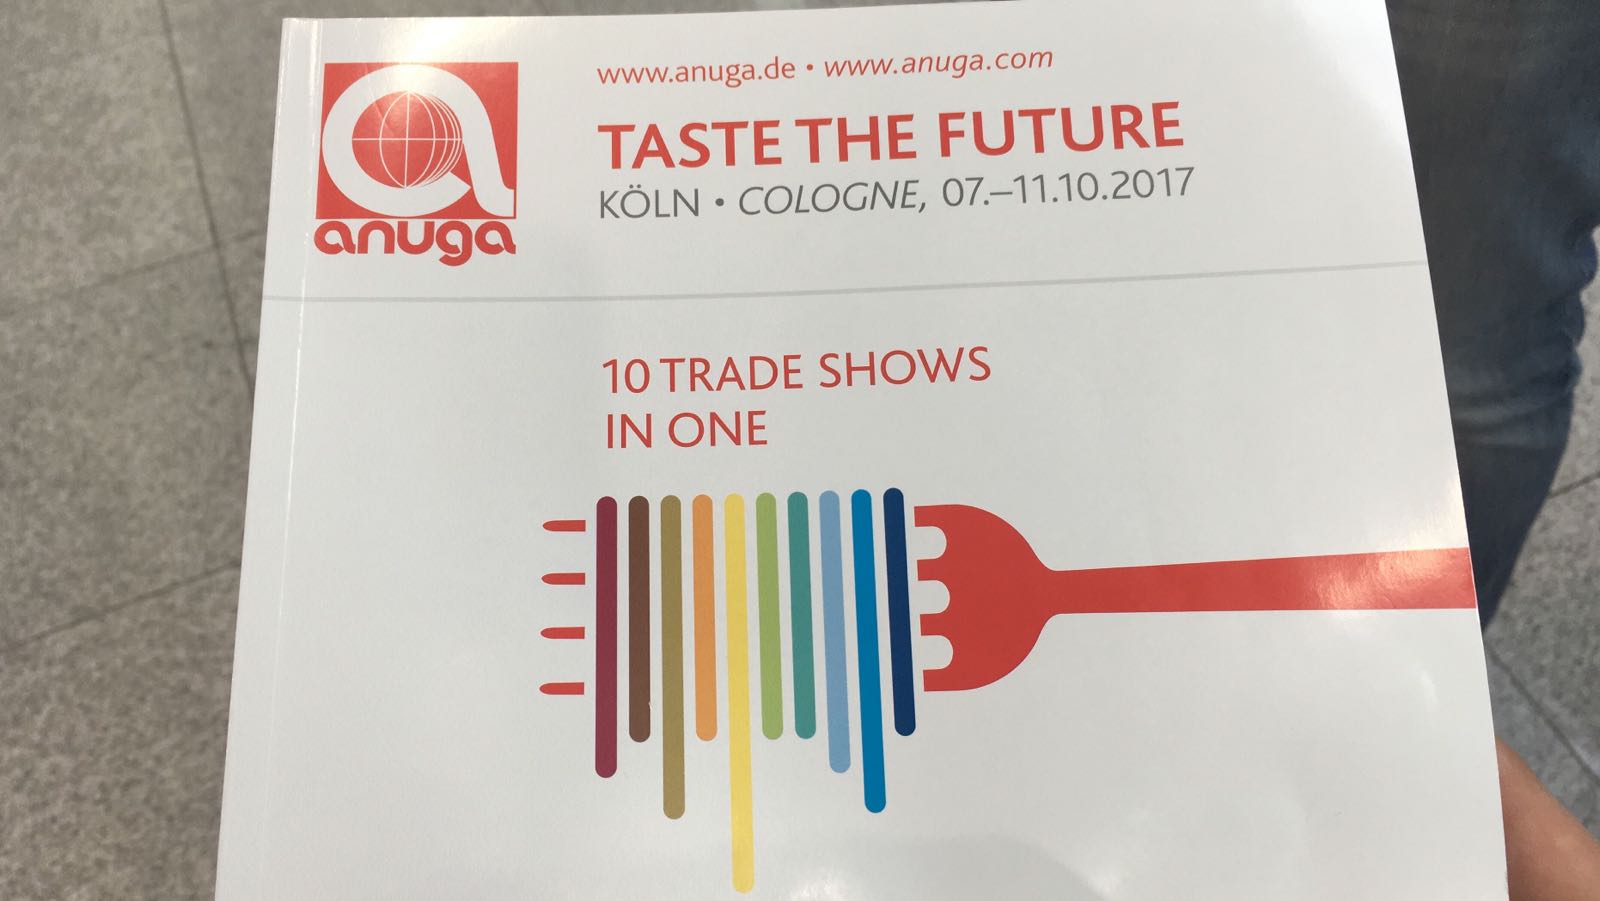 Intraweb all'evento Anuga: Taste the Future